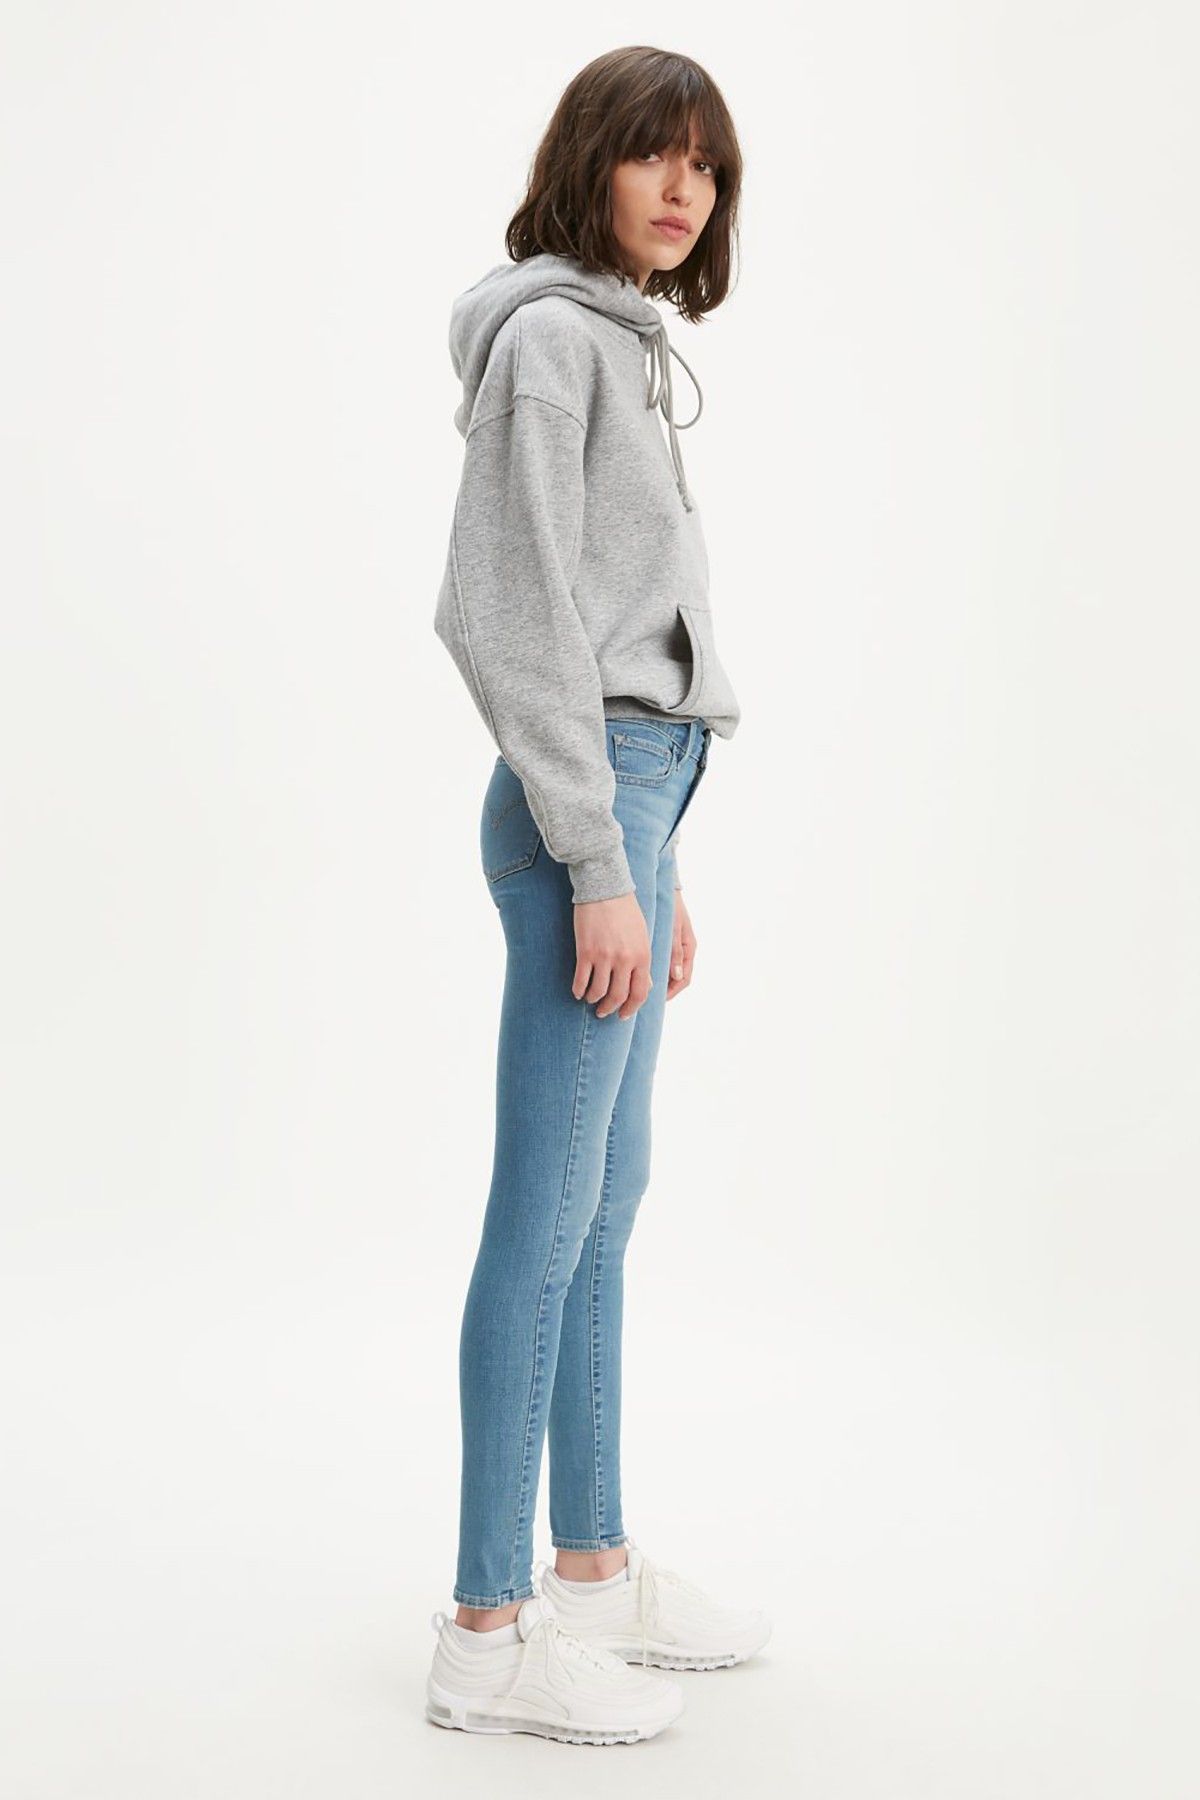 Levi's Â® 710 Super Skinny Jeans Women Jeans|akgalleria.com